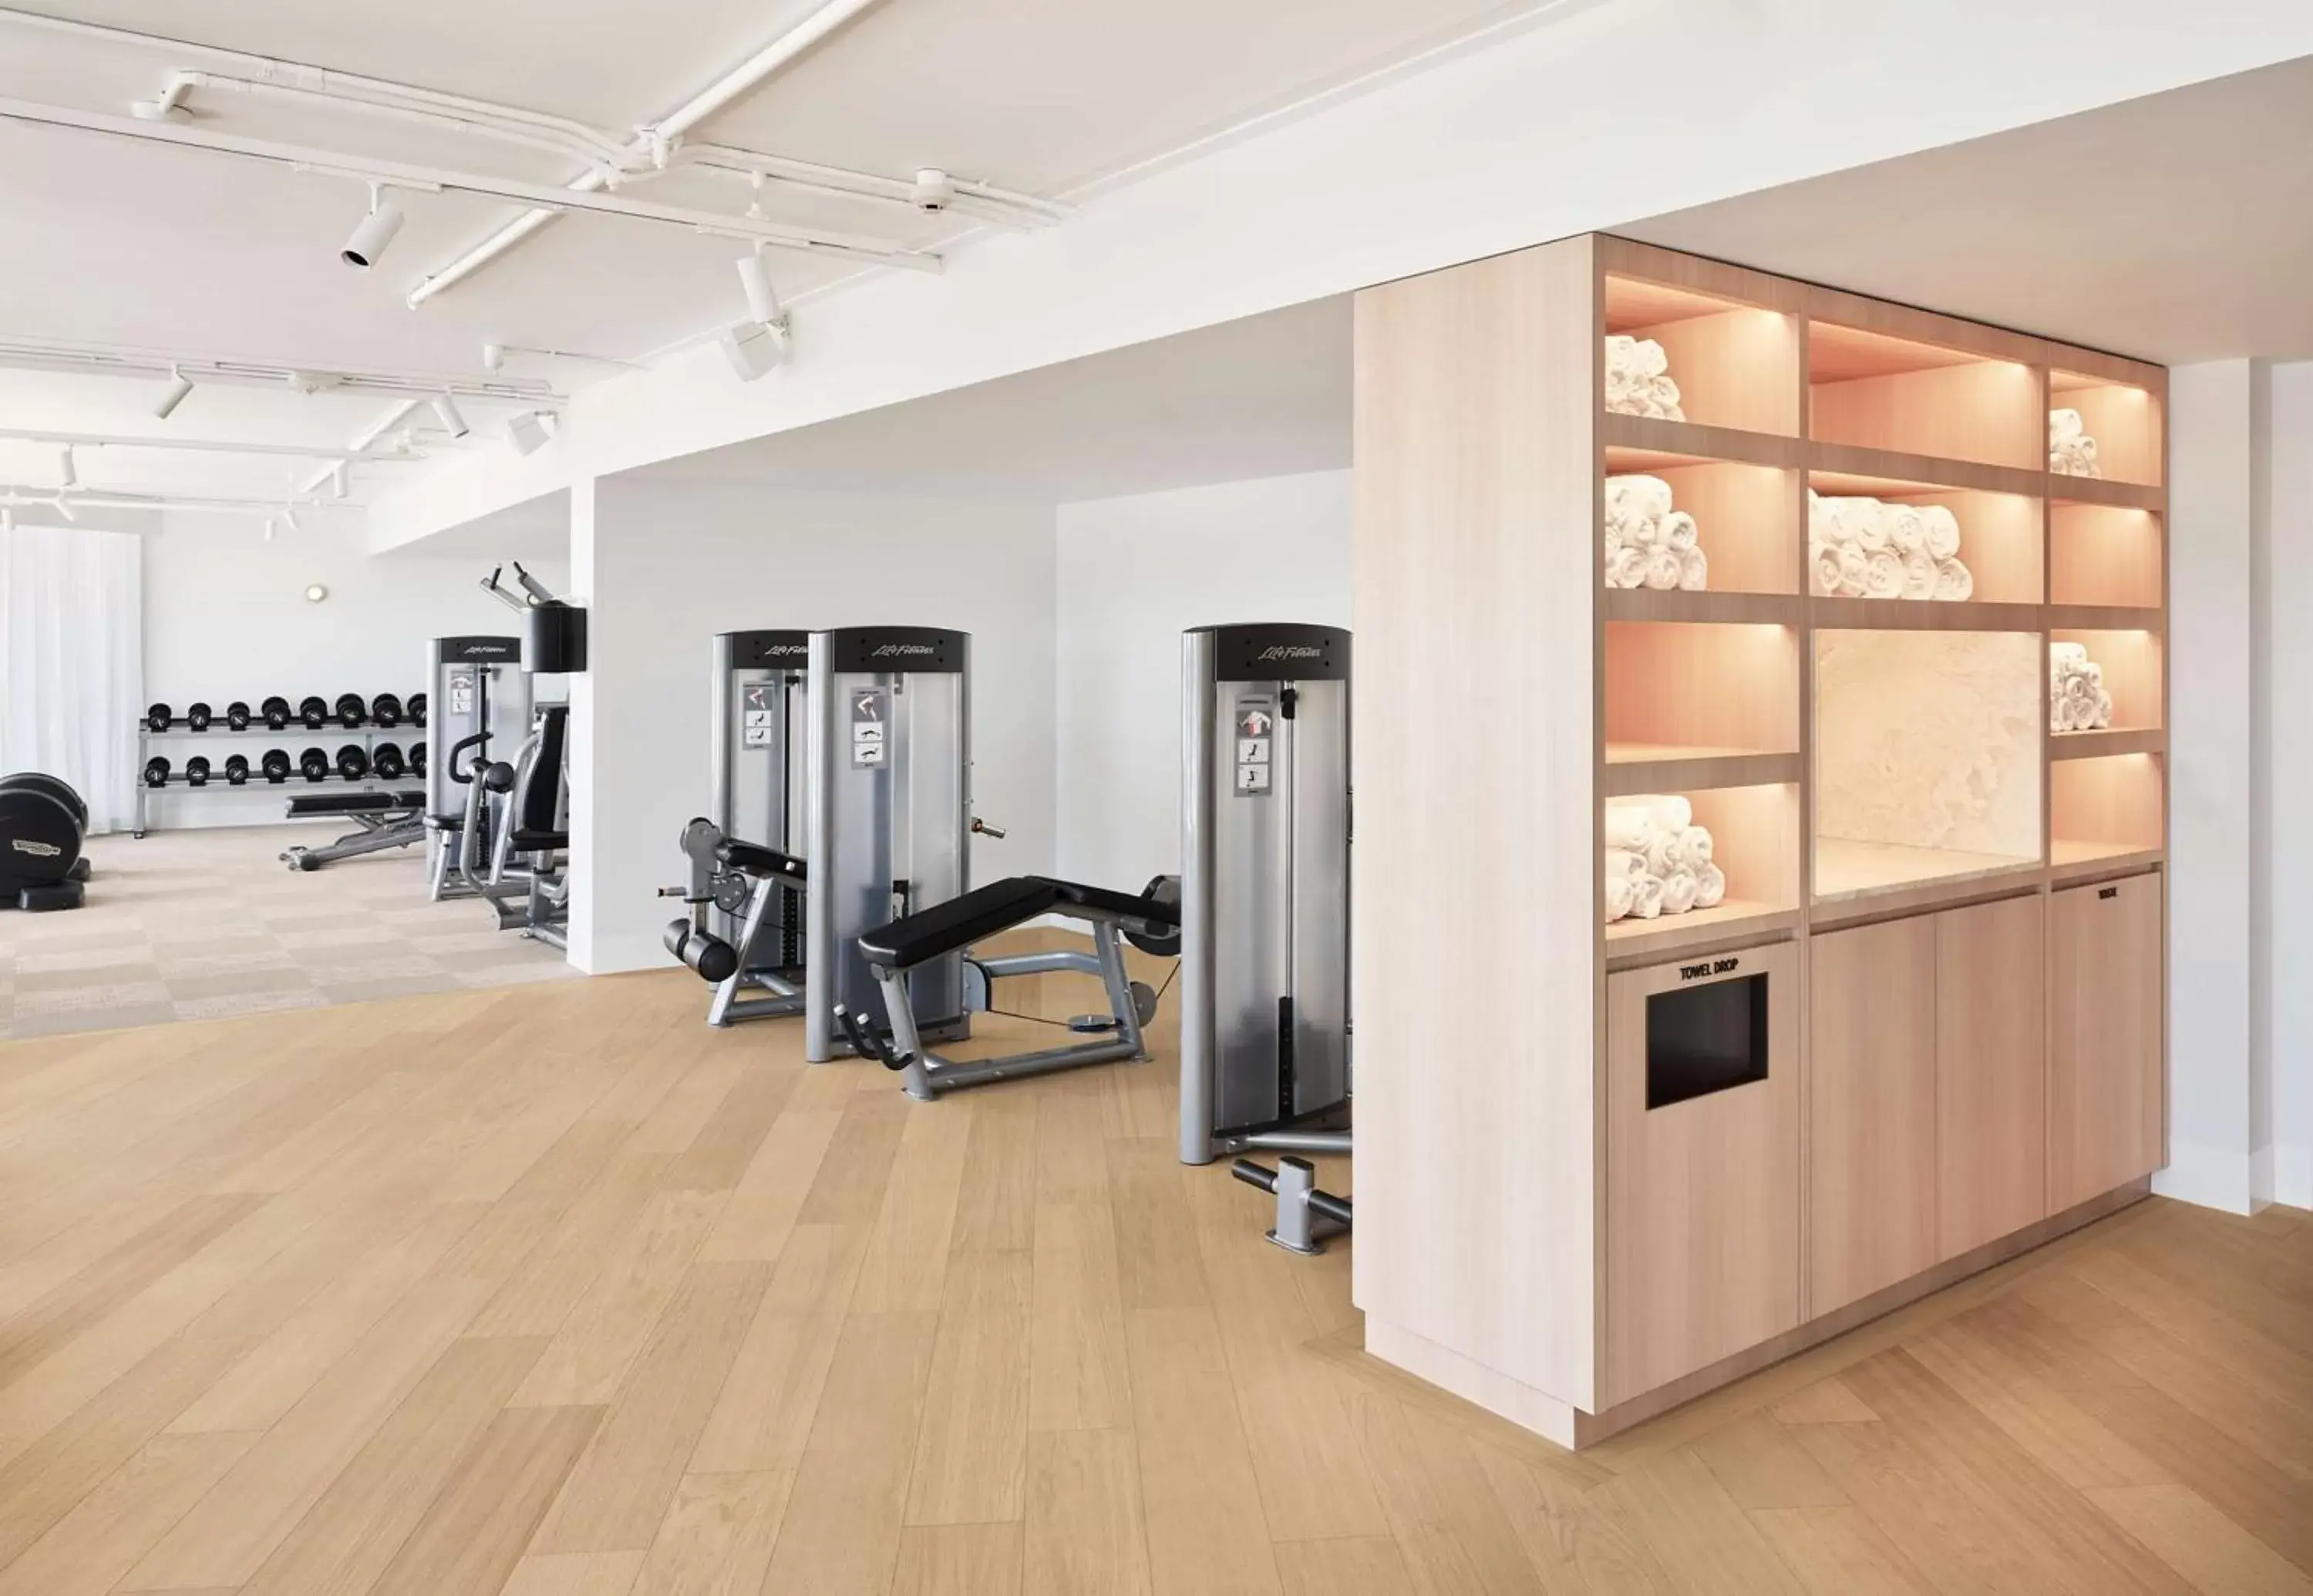 Fitness centre/facilities, Fitness Center/Facilities in Hyatt Regency Sydney